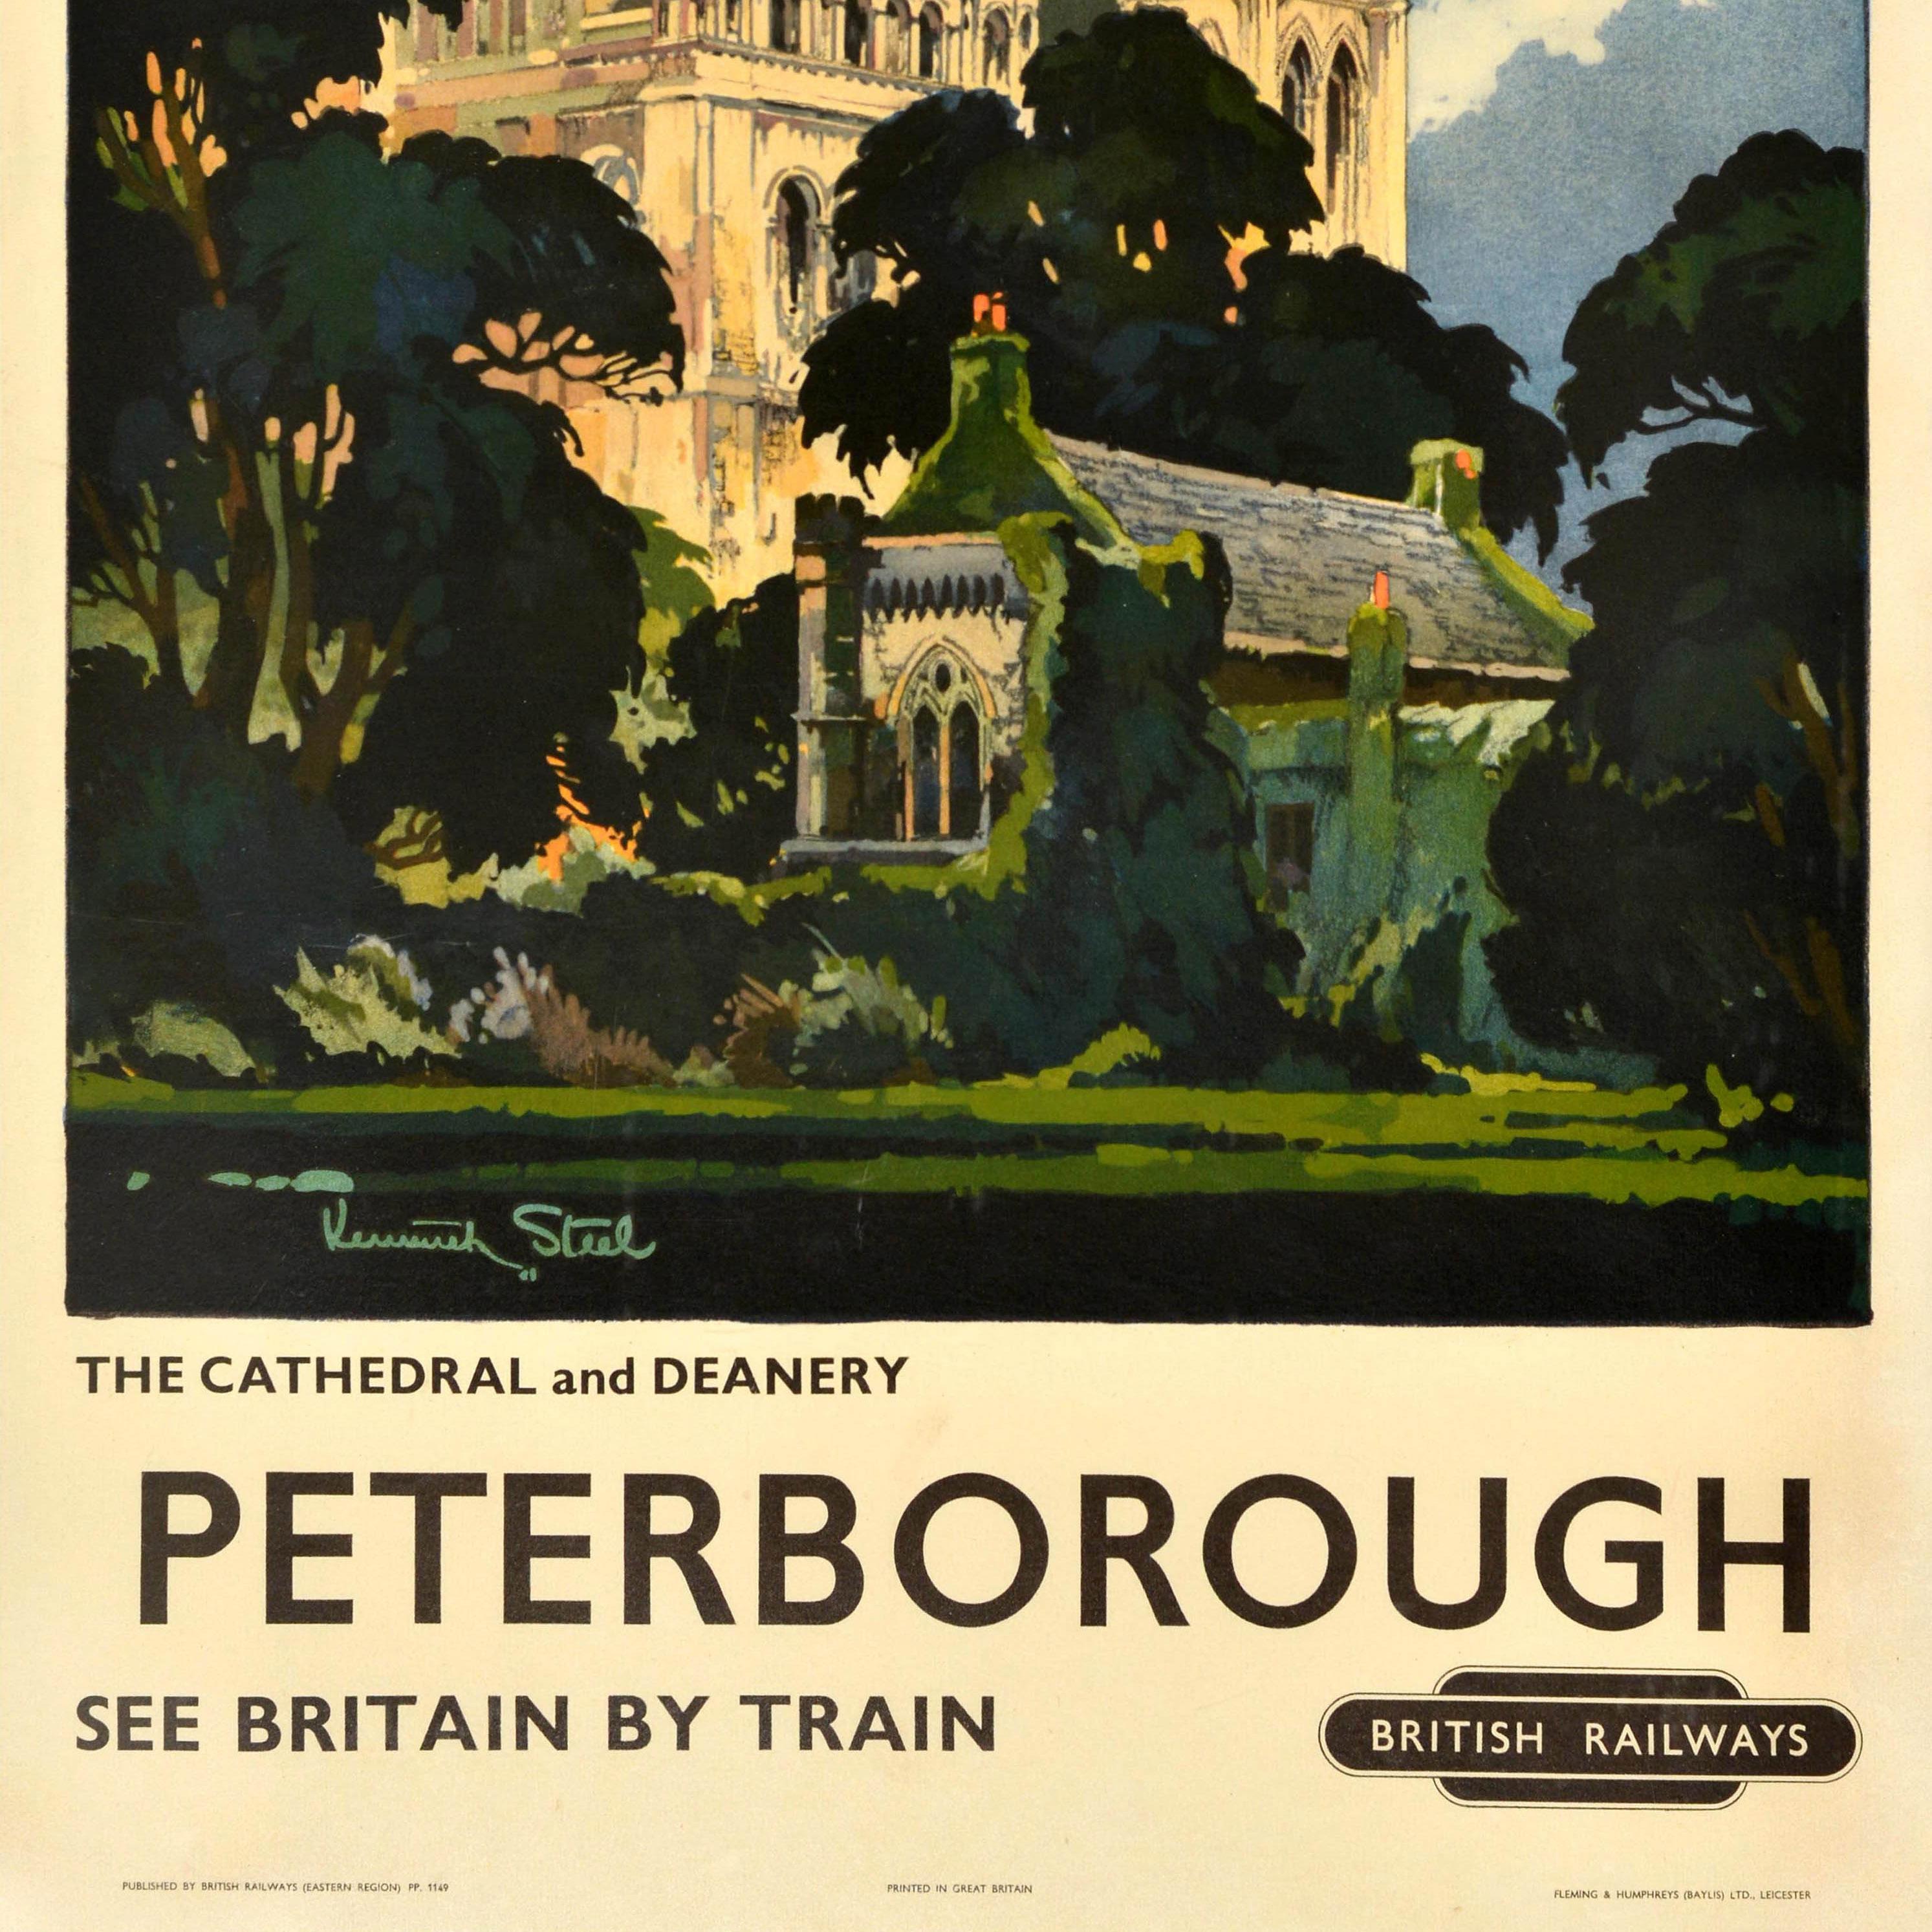 Original-Reise-Werbeplakat - Peterborough See Britain by Train British Railways - mit einer großartigen Landschaftsansicht von Kenneth Steel (1906-1970) der Kathedrale und des Dekanats mit grünen Bäumen im Vordergrund, darunter der Text und das Logo